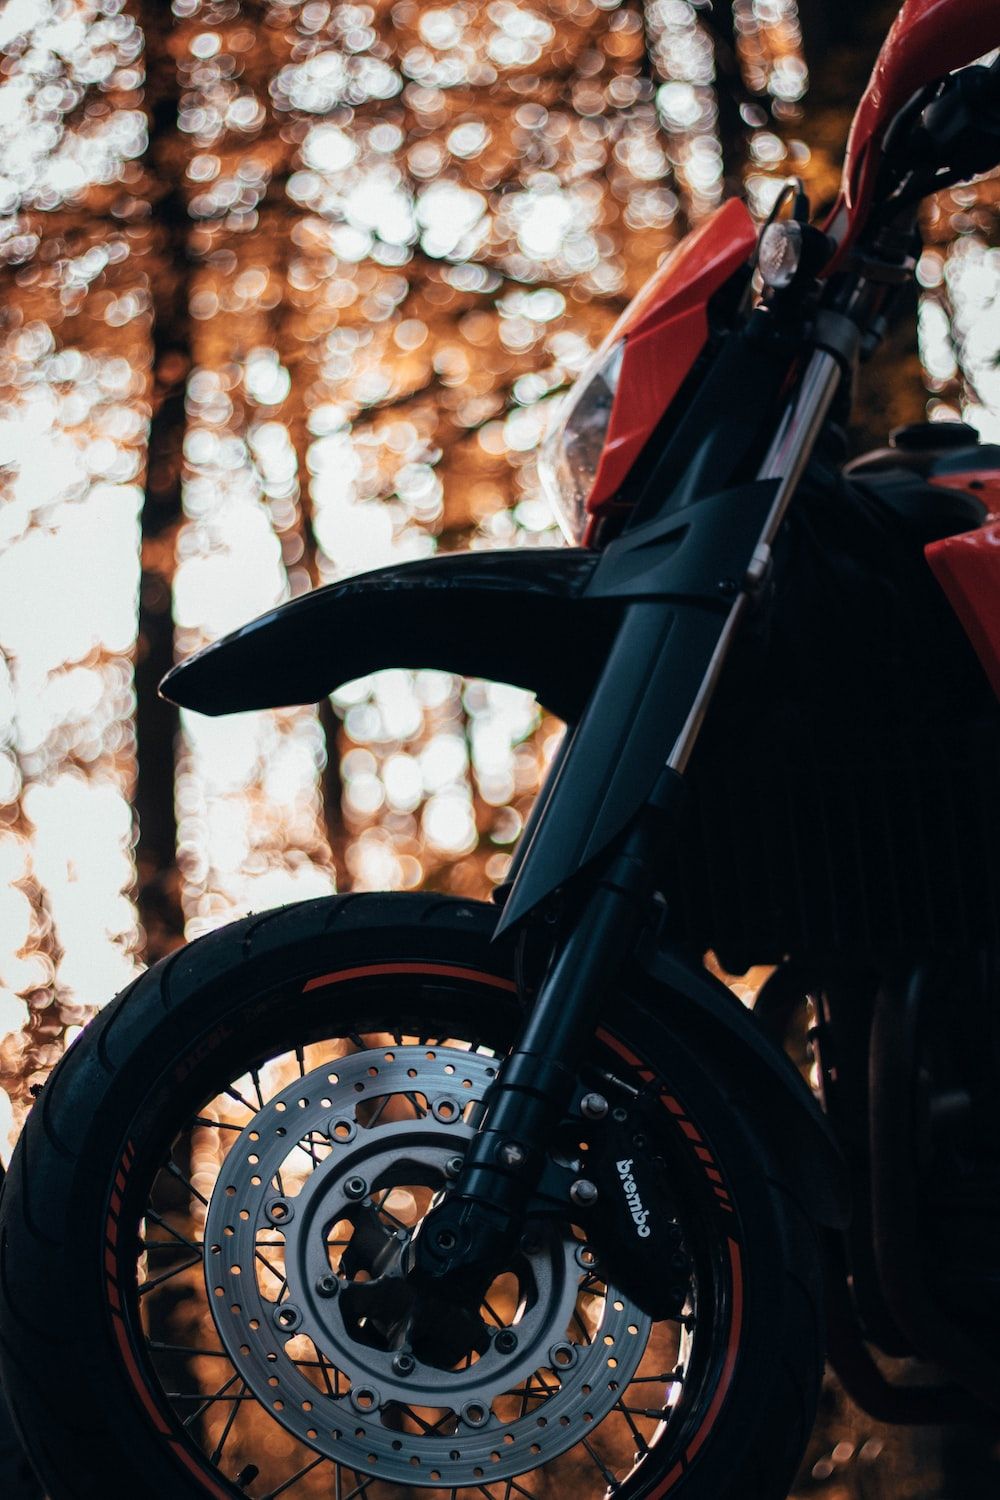  Motorrad Hintergrundbild 1000x1500. Foto zum Thema Rotes und schwarzes motorrad in der nähe von brown tree tagsüber